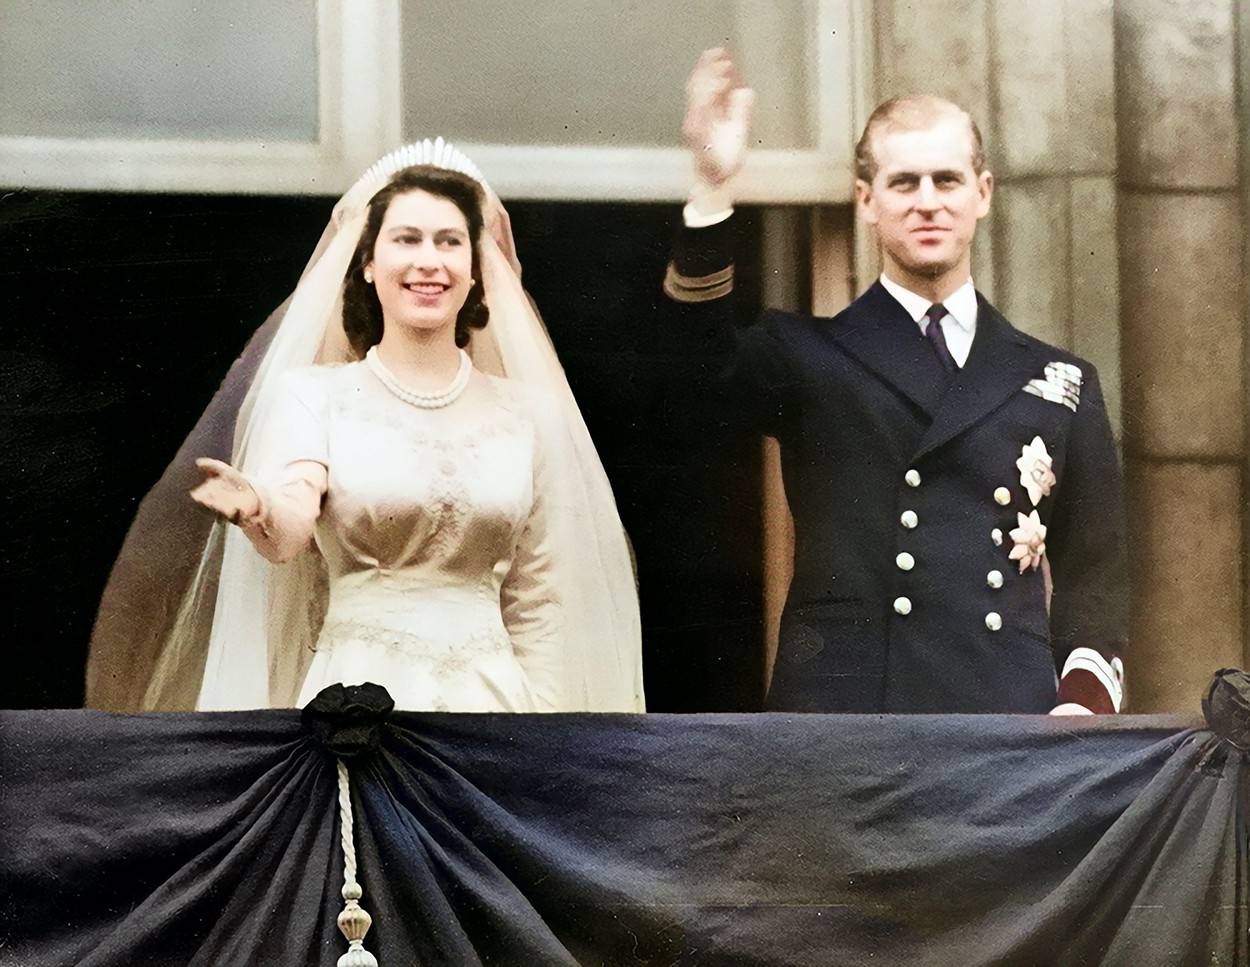 Погребението на кралица Елизабет II ще бъде първото държавно погребение във Великобритания след това на Чърчил през 1965 г.